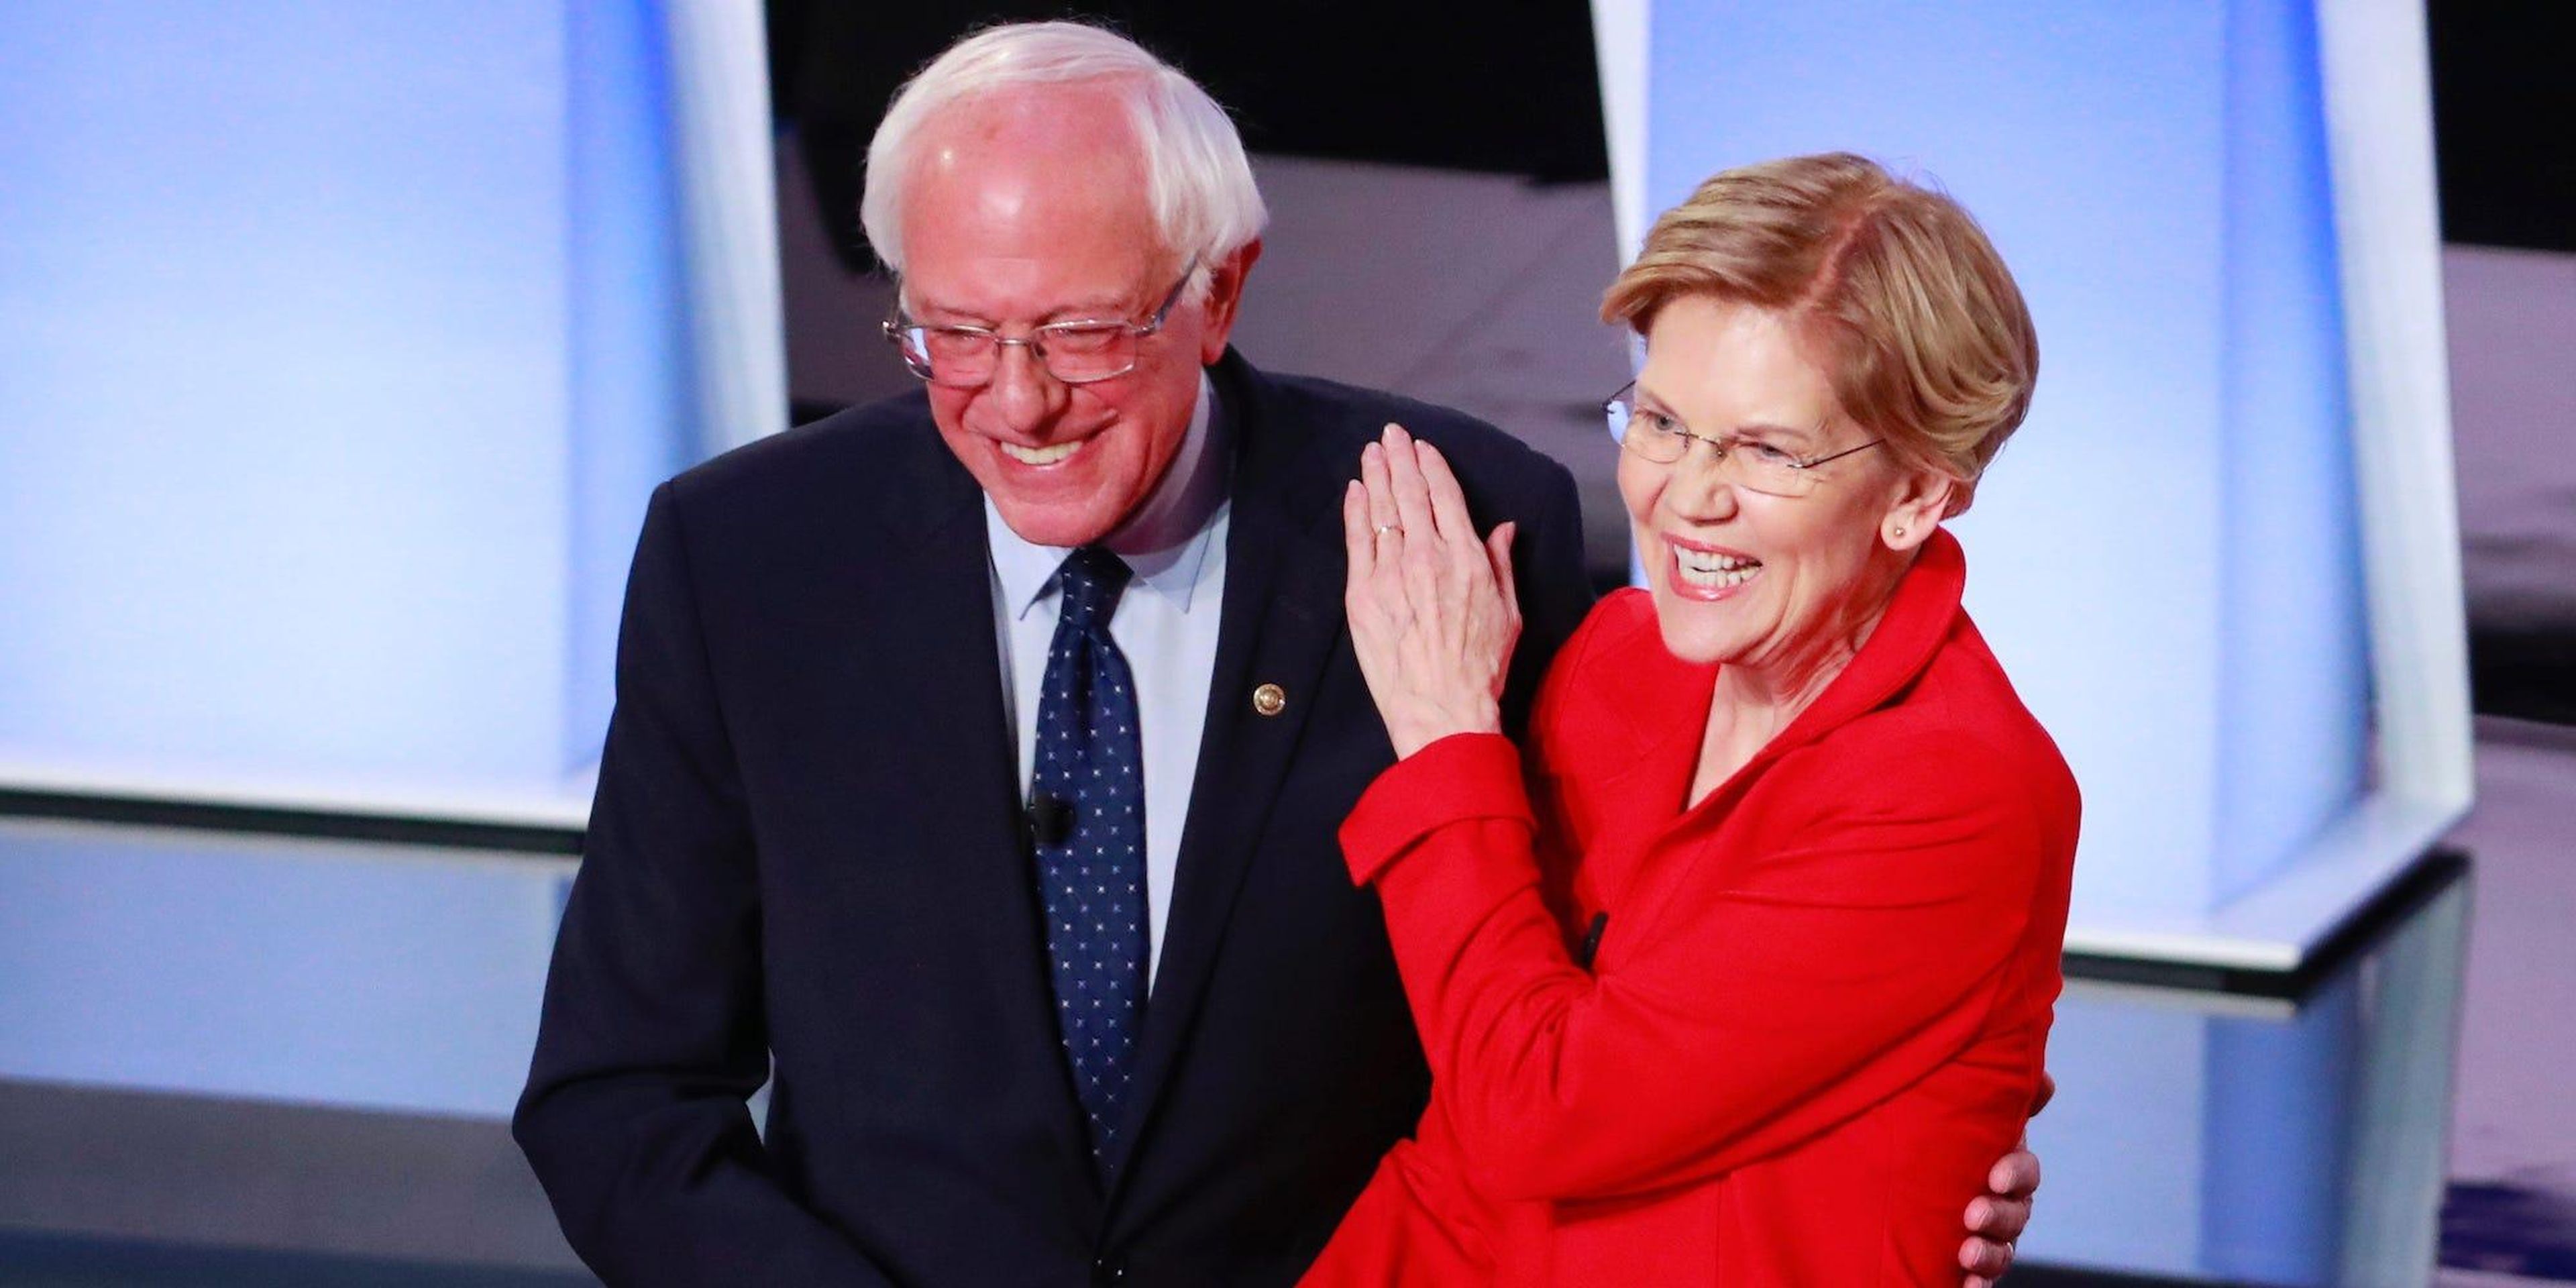 Los senadores demócratas, Bernie Sanders y Elizabeth Warren se dan la mano antes del inicio de la primera noche del segundo debate presidencial demócrata del 2020 en Detroit, Michigan, el 30 de julio de 2019.